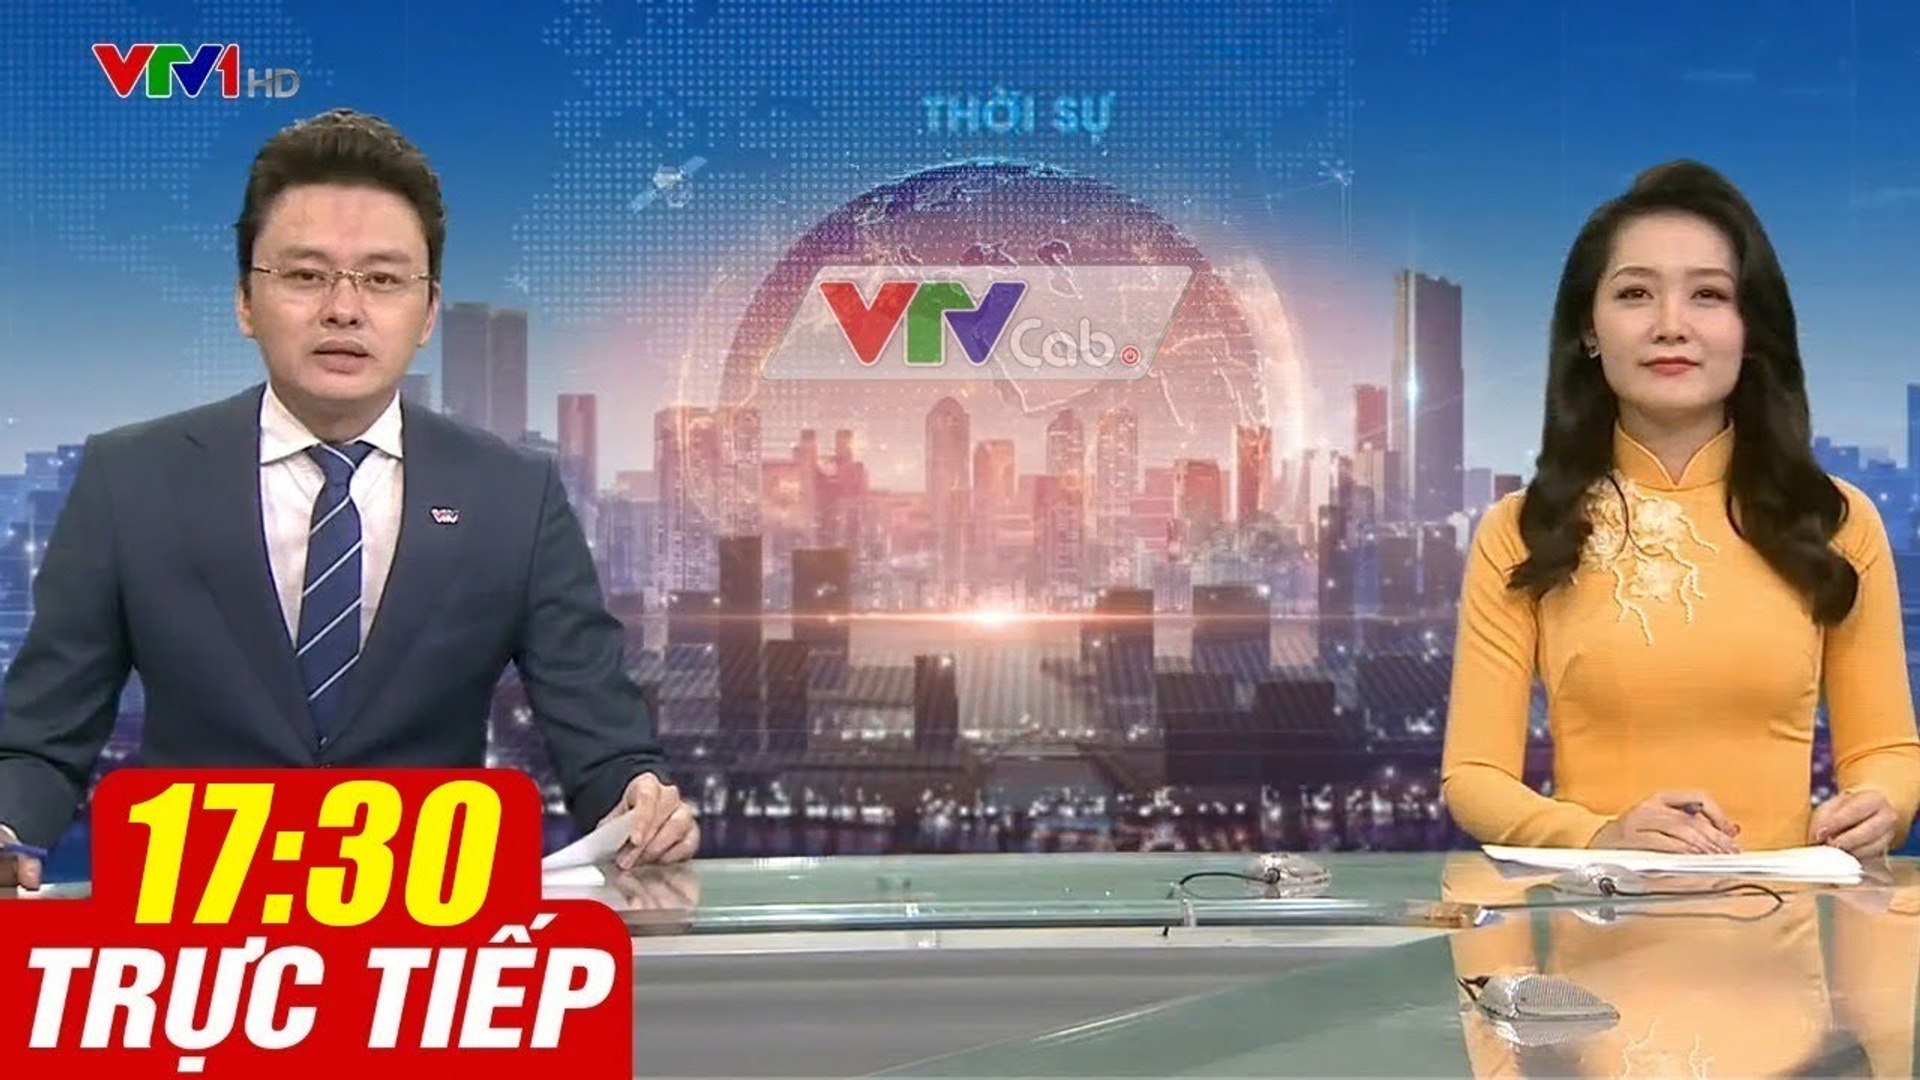 Trực Tiếp VIỆT NAM HÔM NAY 17h30 ngày 10.08.2020  Tin tức thời sự VTV1 mới nhất hôm nay